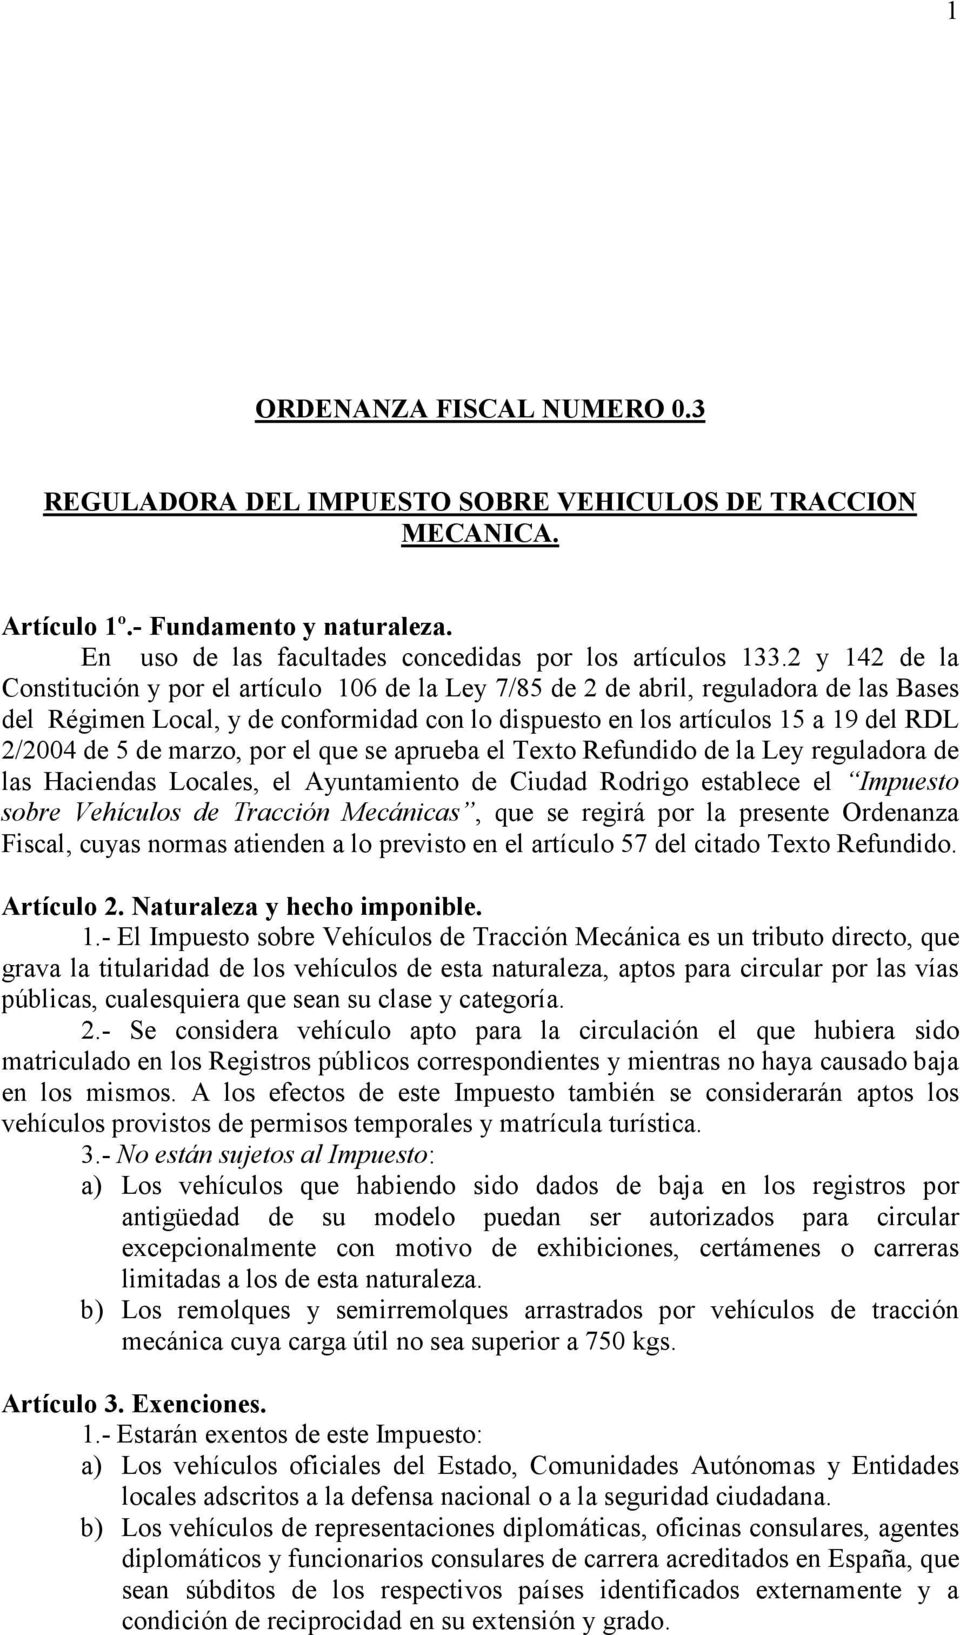 5 de marzo, por el que se aprueba el Texto Refundido de la Ley reguladora de las Haciendas Locales, el Ayuntamiento de Ciudad Rodrigo establece el Impuesto sobre Vehículos de Tracción Mecánicas, que